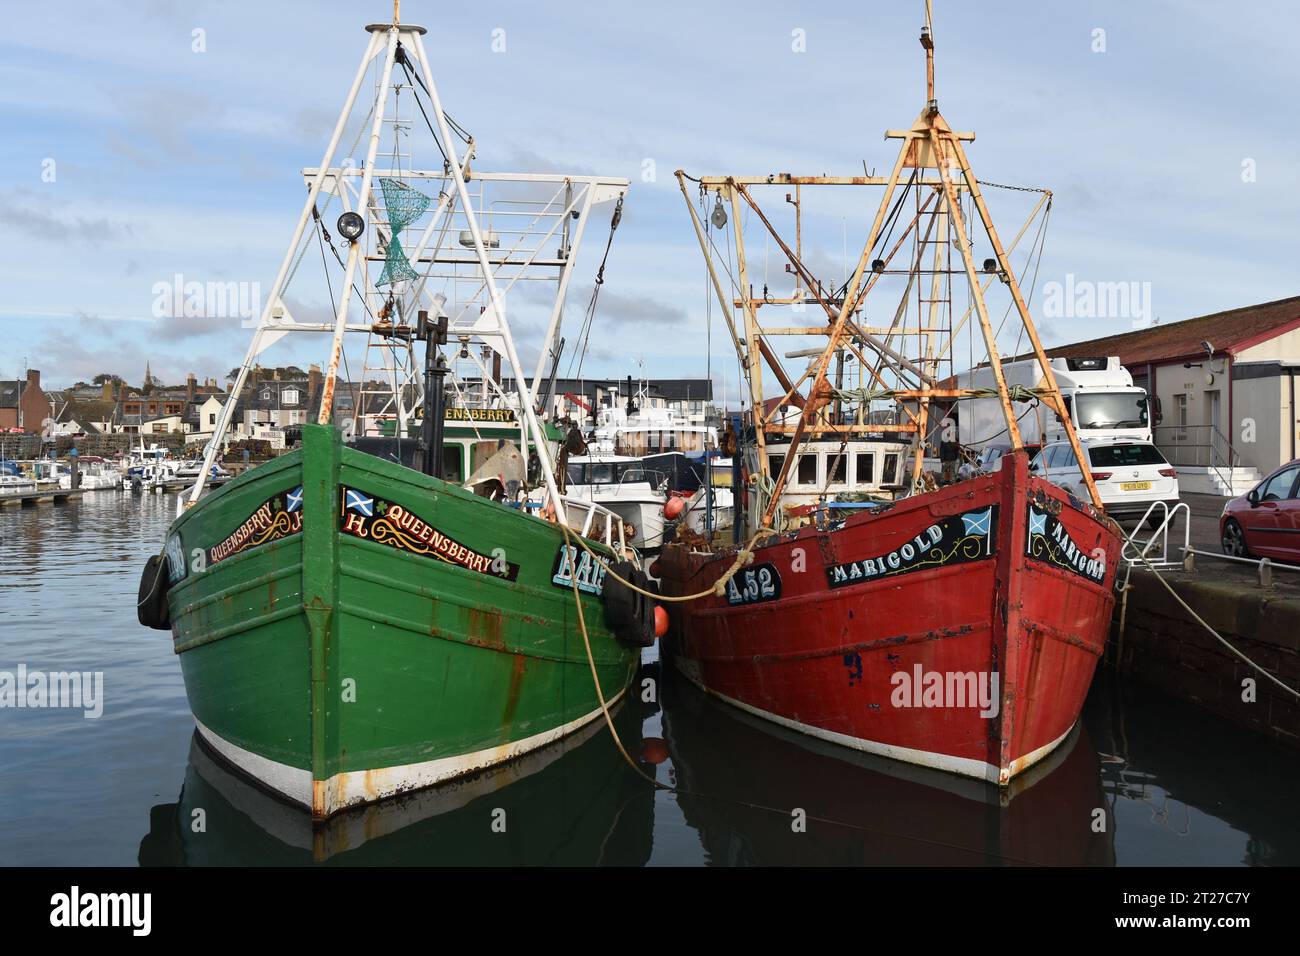 Ein grünes Boot (Queensberry BA156) und ein rotes Boot (Marigold A52) liegen im Arbroath Harbour an der Ostküste Schottlands. Stockfoto